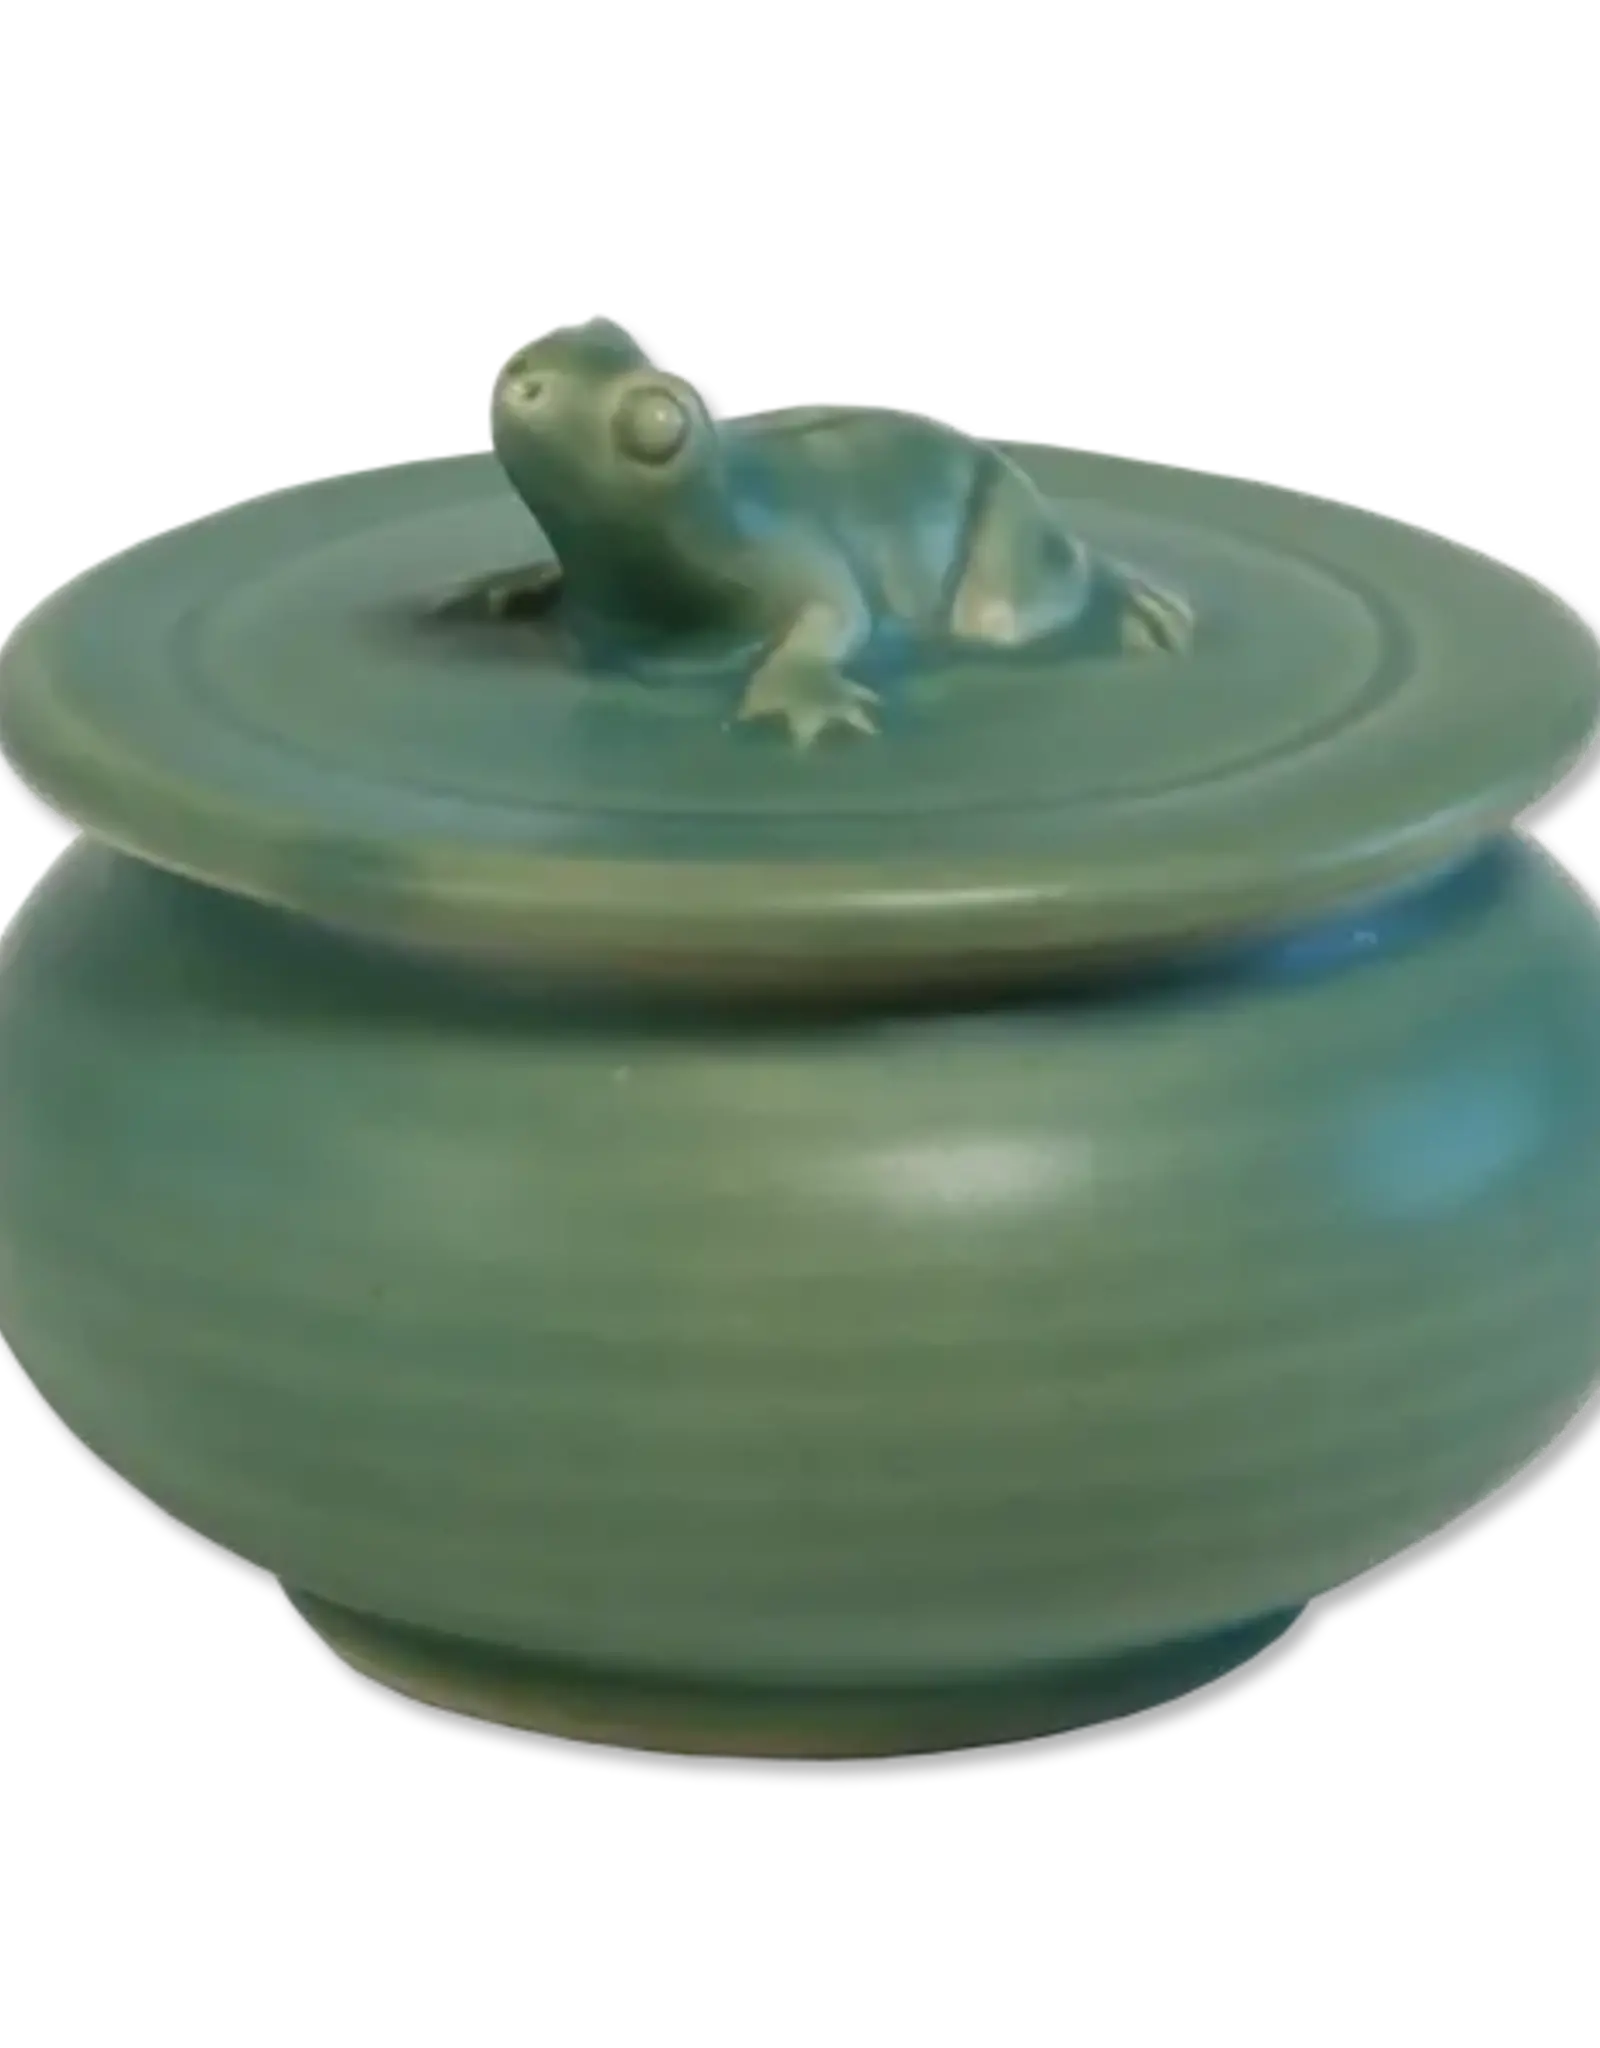 Balizen Ceramic Frog Sugar Bowl